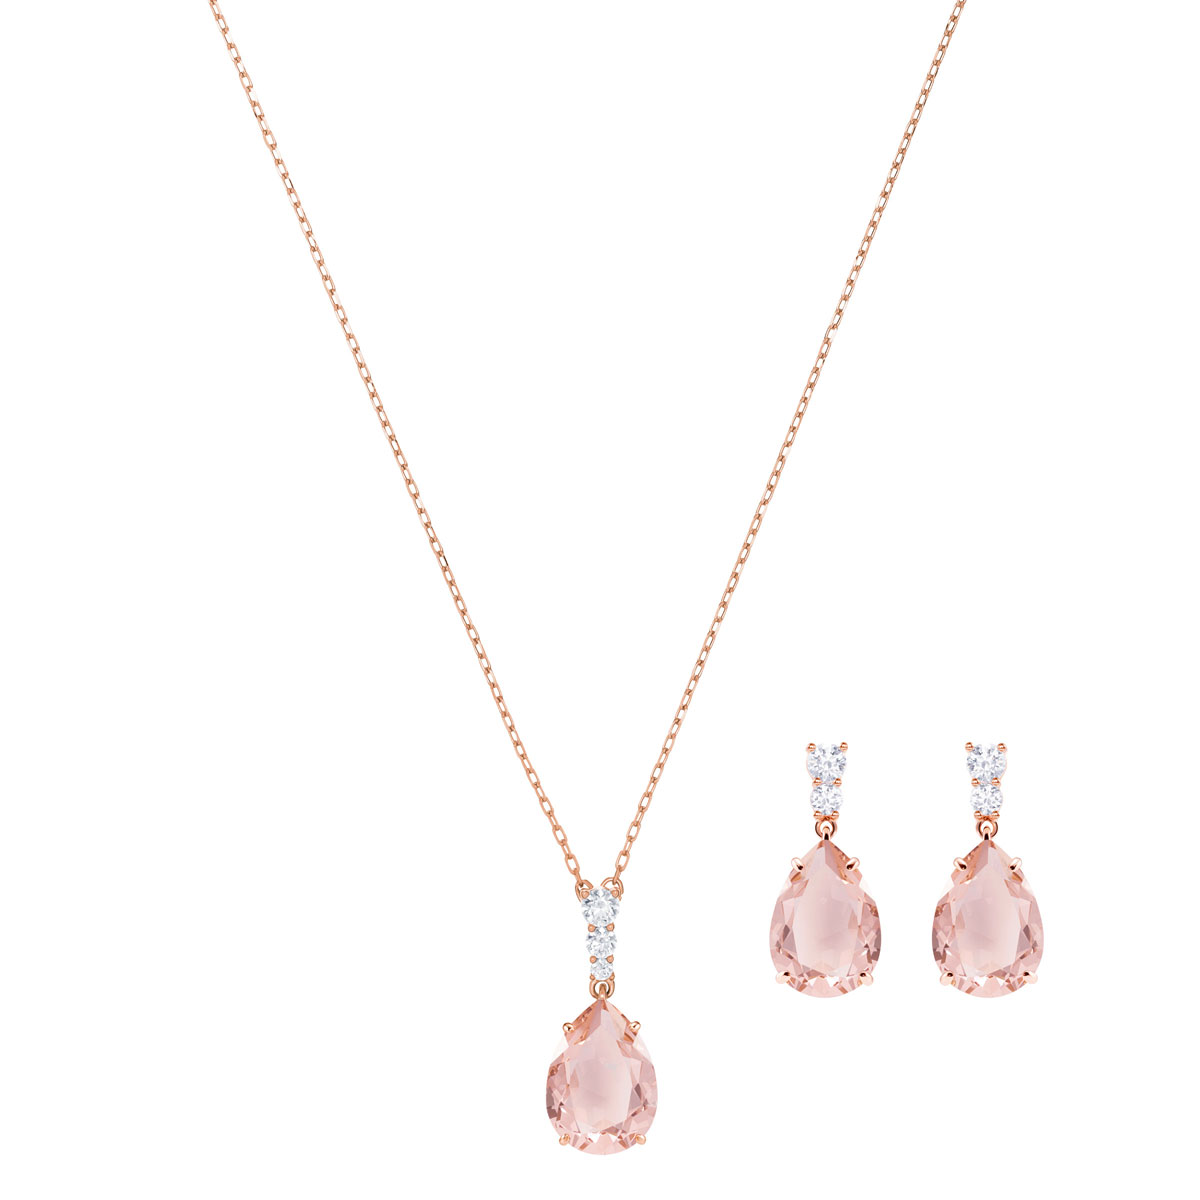 Swarovski Vintage Necklace and Earrings Set, Pink, Rose Gold